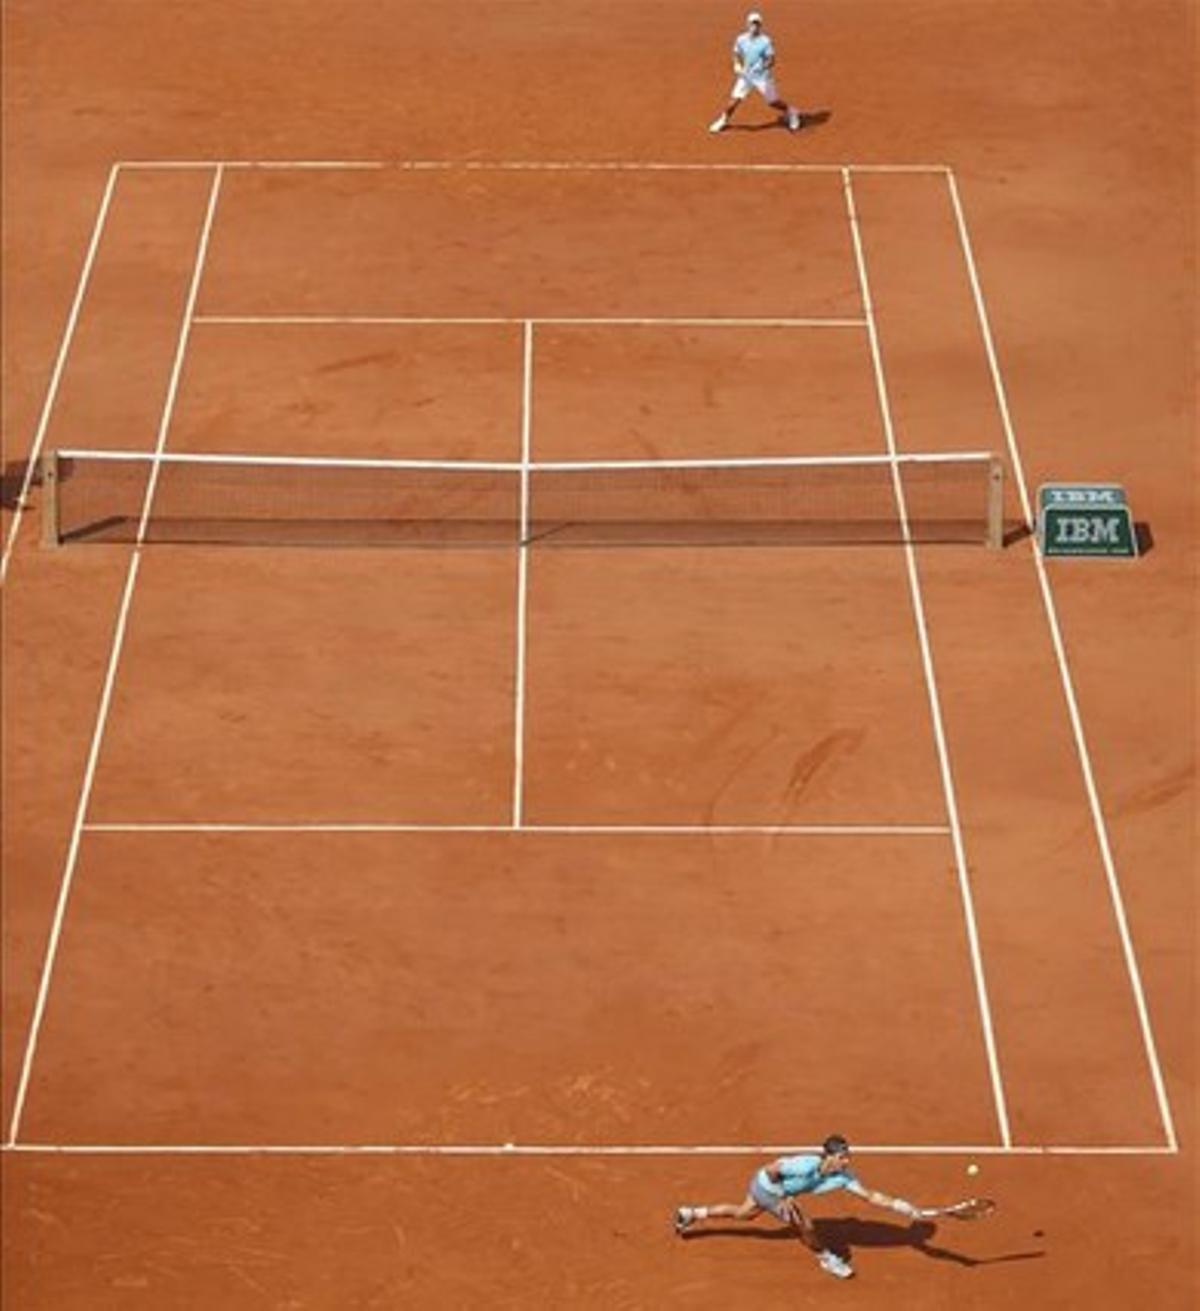 La pista Philippe Chatrier del estadio Roland Garros, durante el partido entre Nadal y Djokovic.